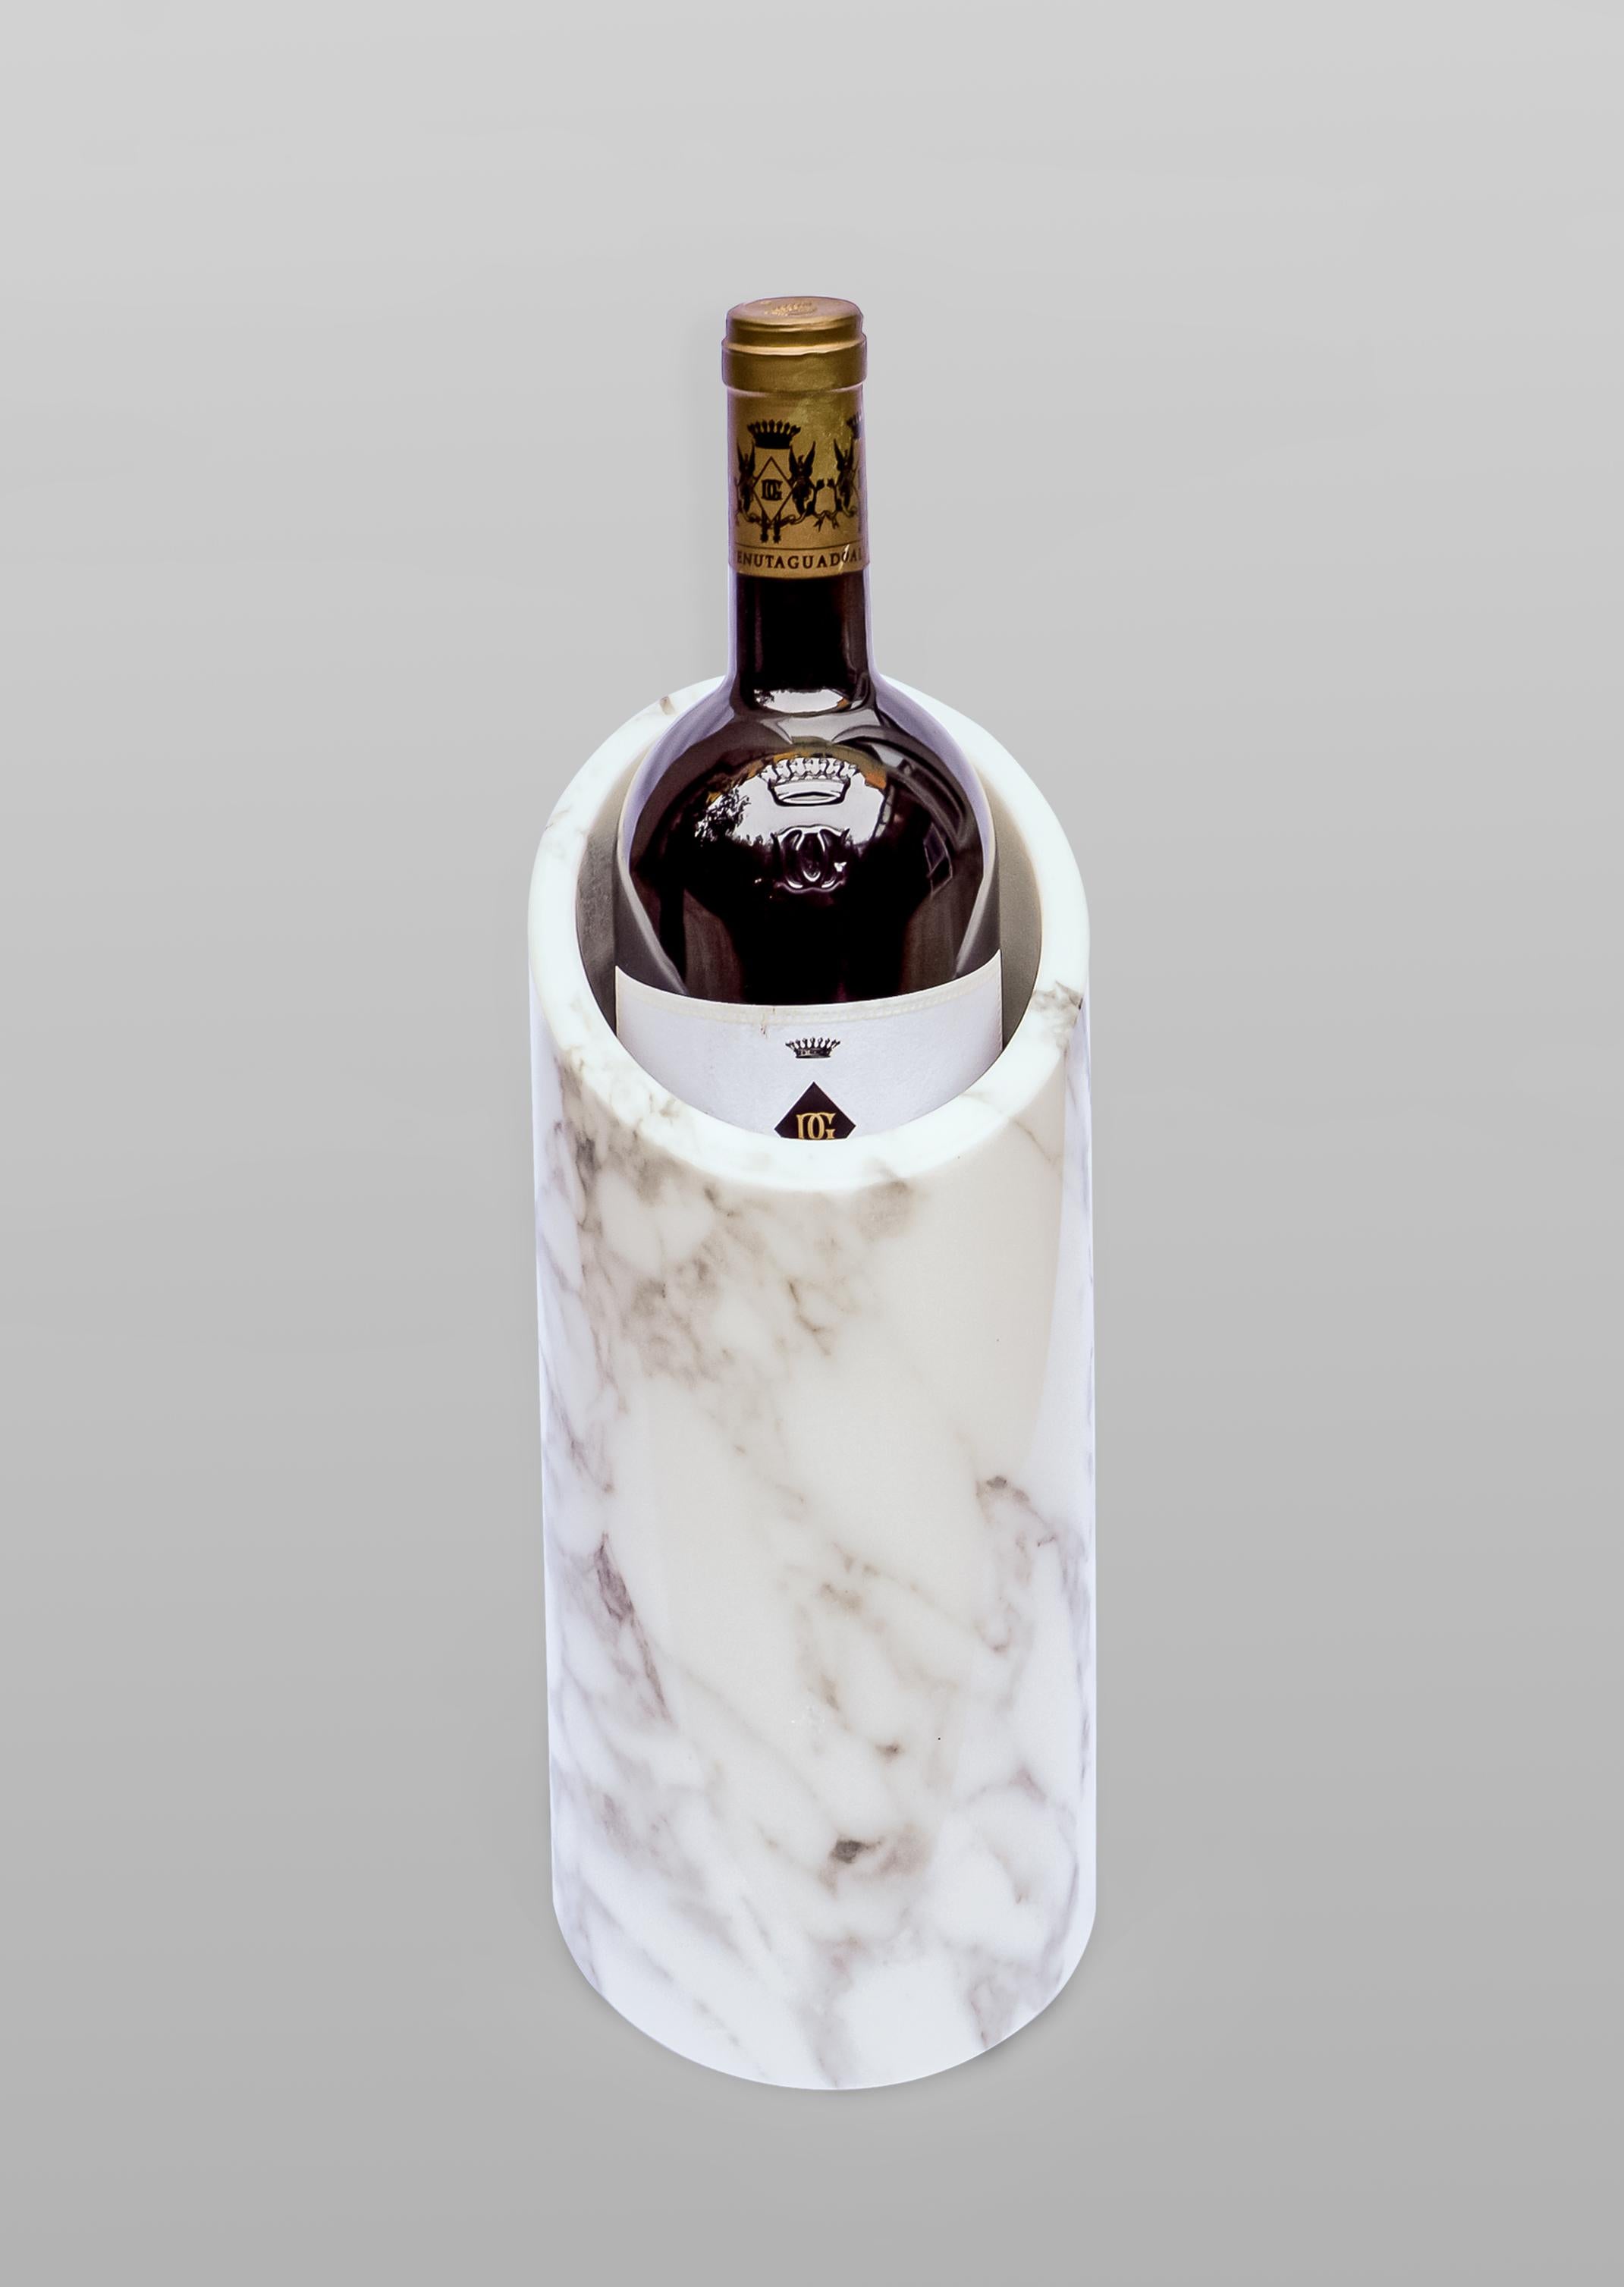 Tilt ist ein eleganter Weinkühler, der aus einem einzigen Block aus ausgewähltem Calacata-Marmor oder Nero Marquina-Stein meisterhaft gefertigt wurde und ein zeitgemäßes und doch zeitloses Aussehen hat.
100% handgefertigt in Carrara (Italien) aus